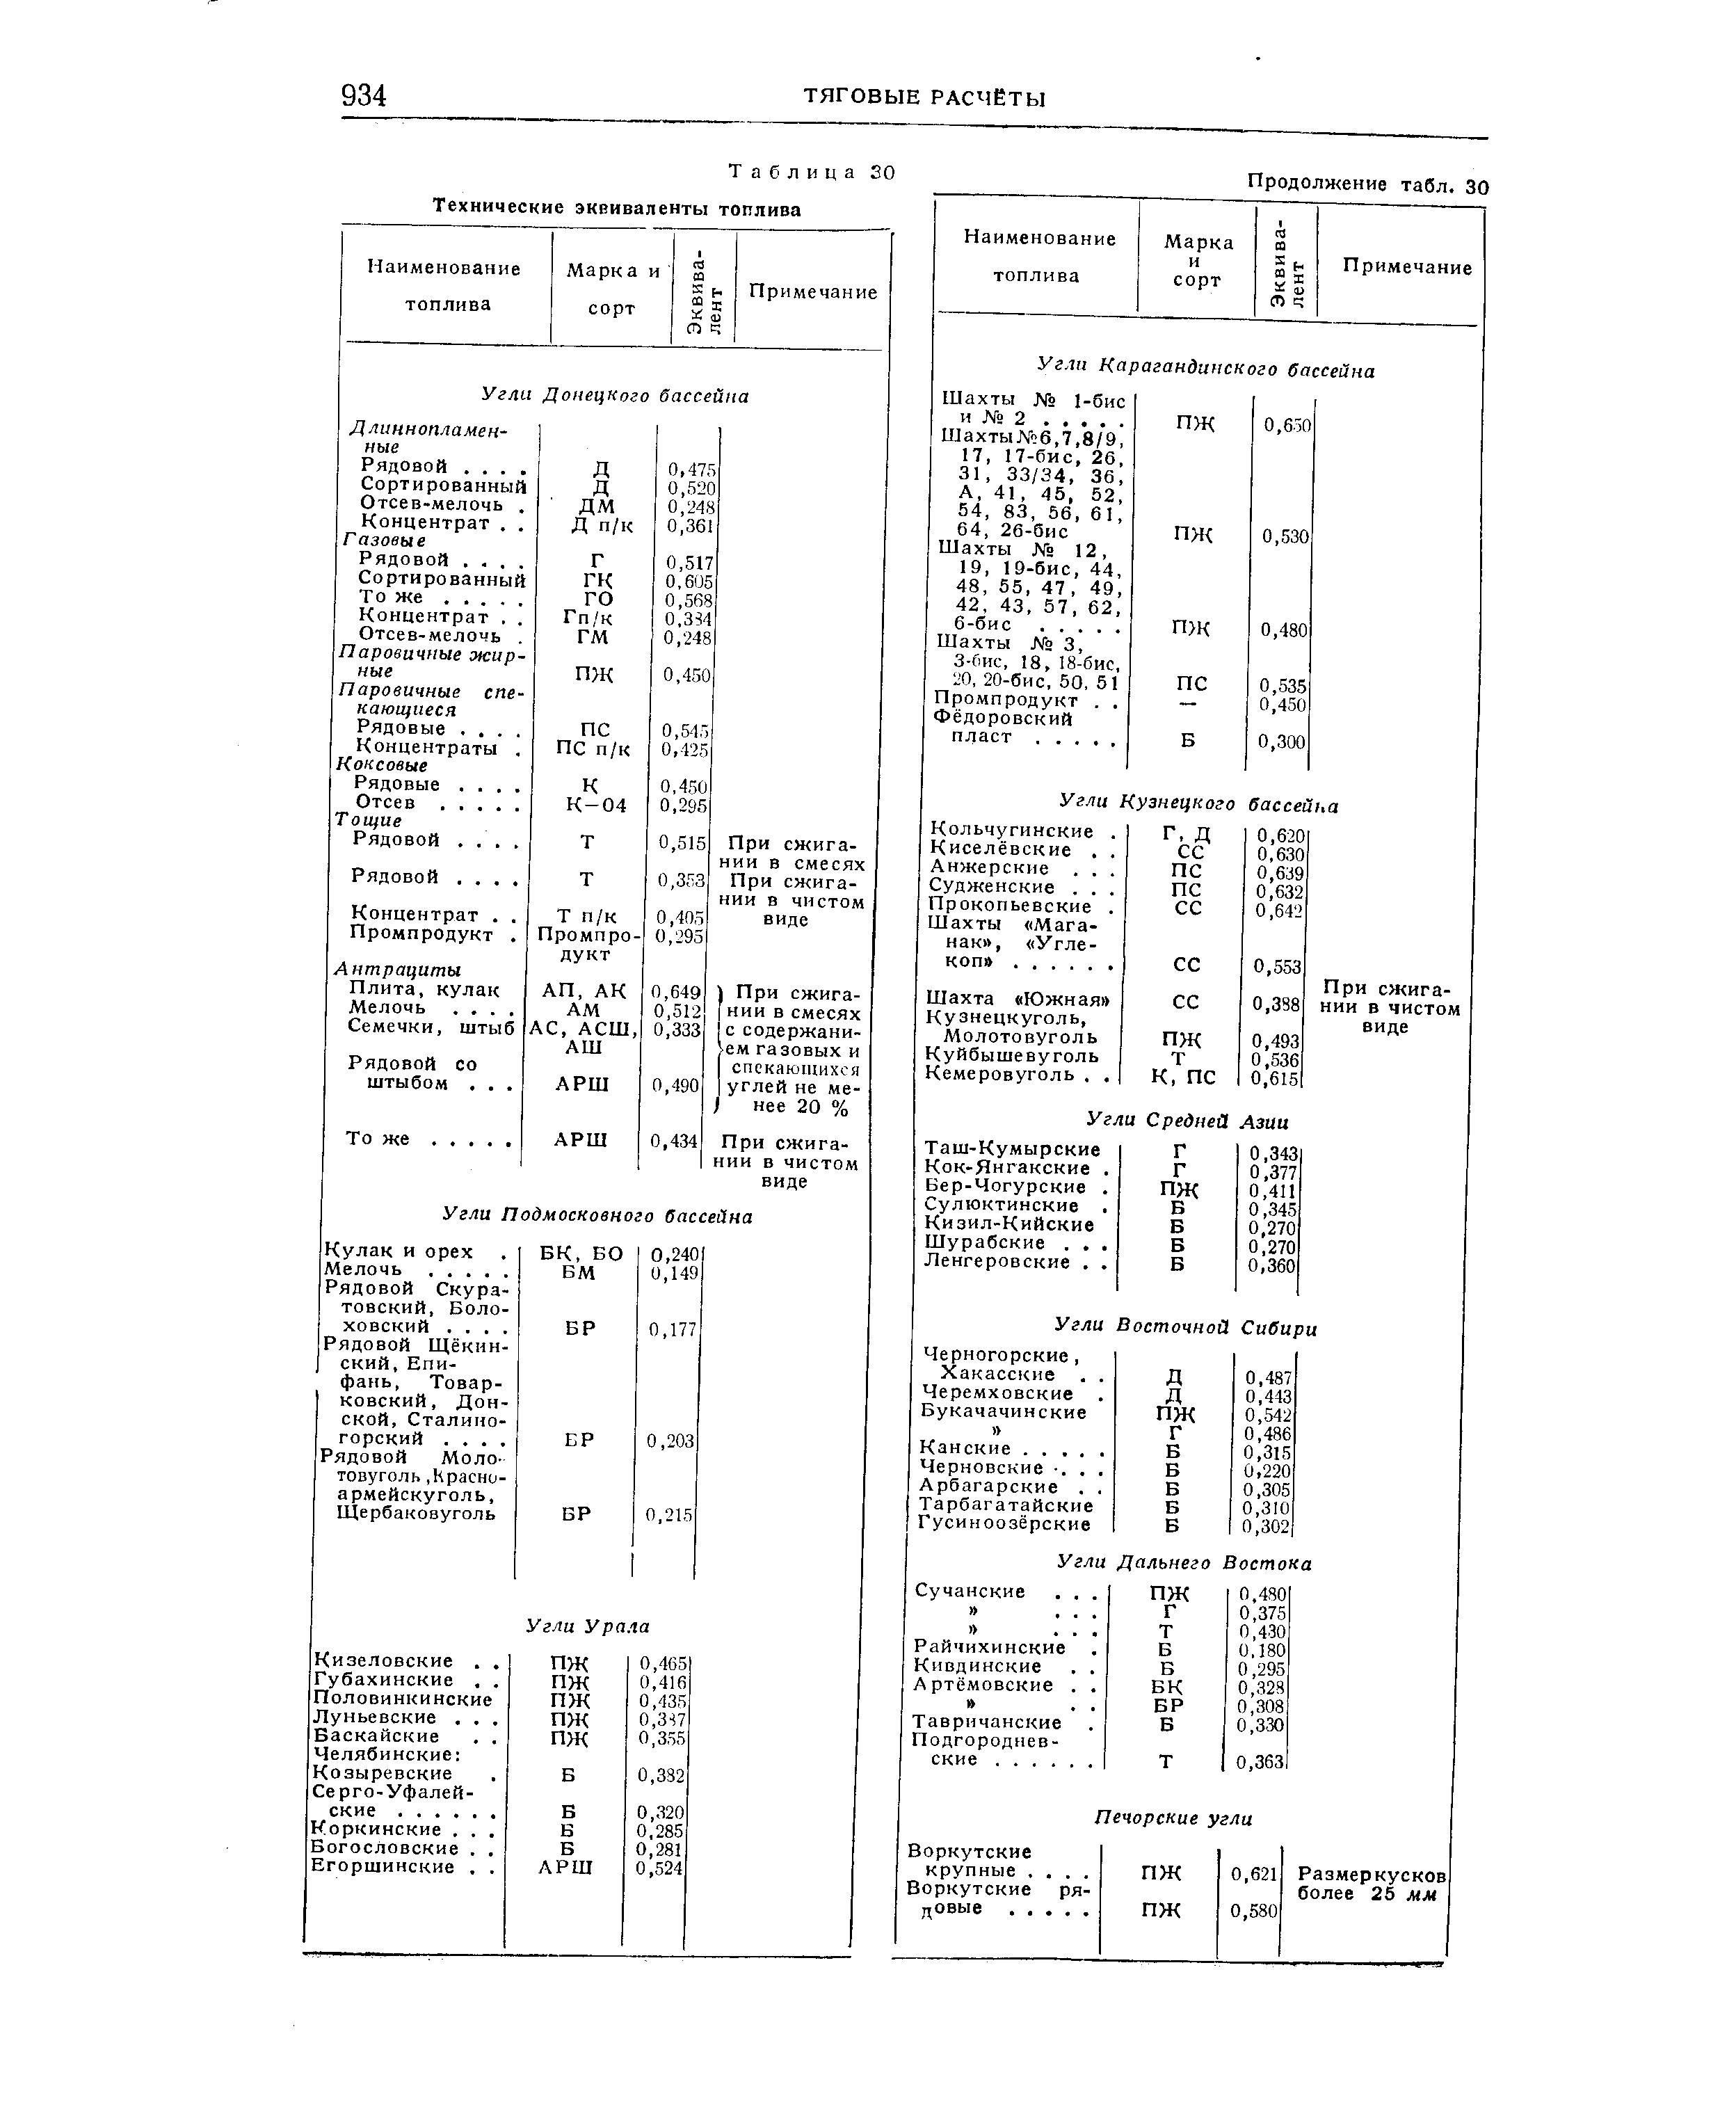 Таблица S0 Технические эквиваленты топлива
